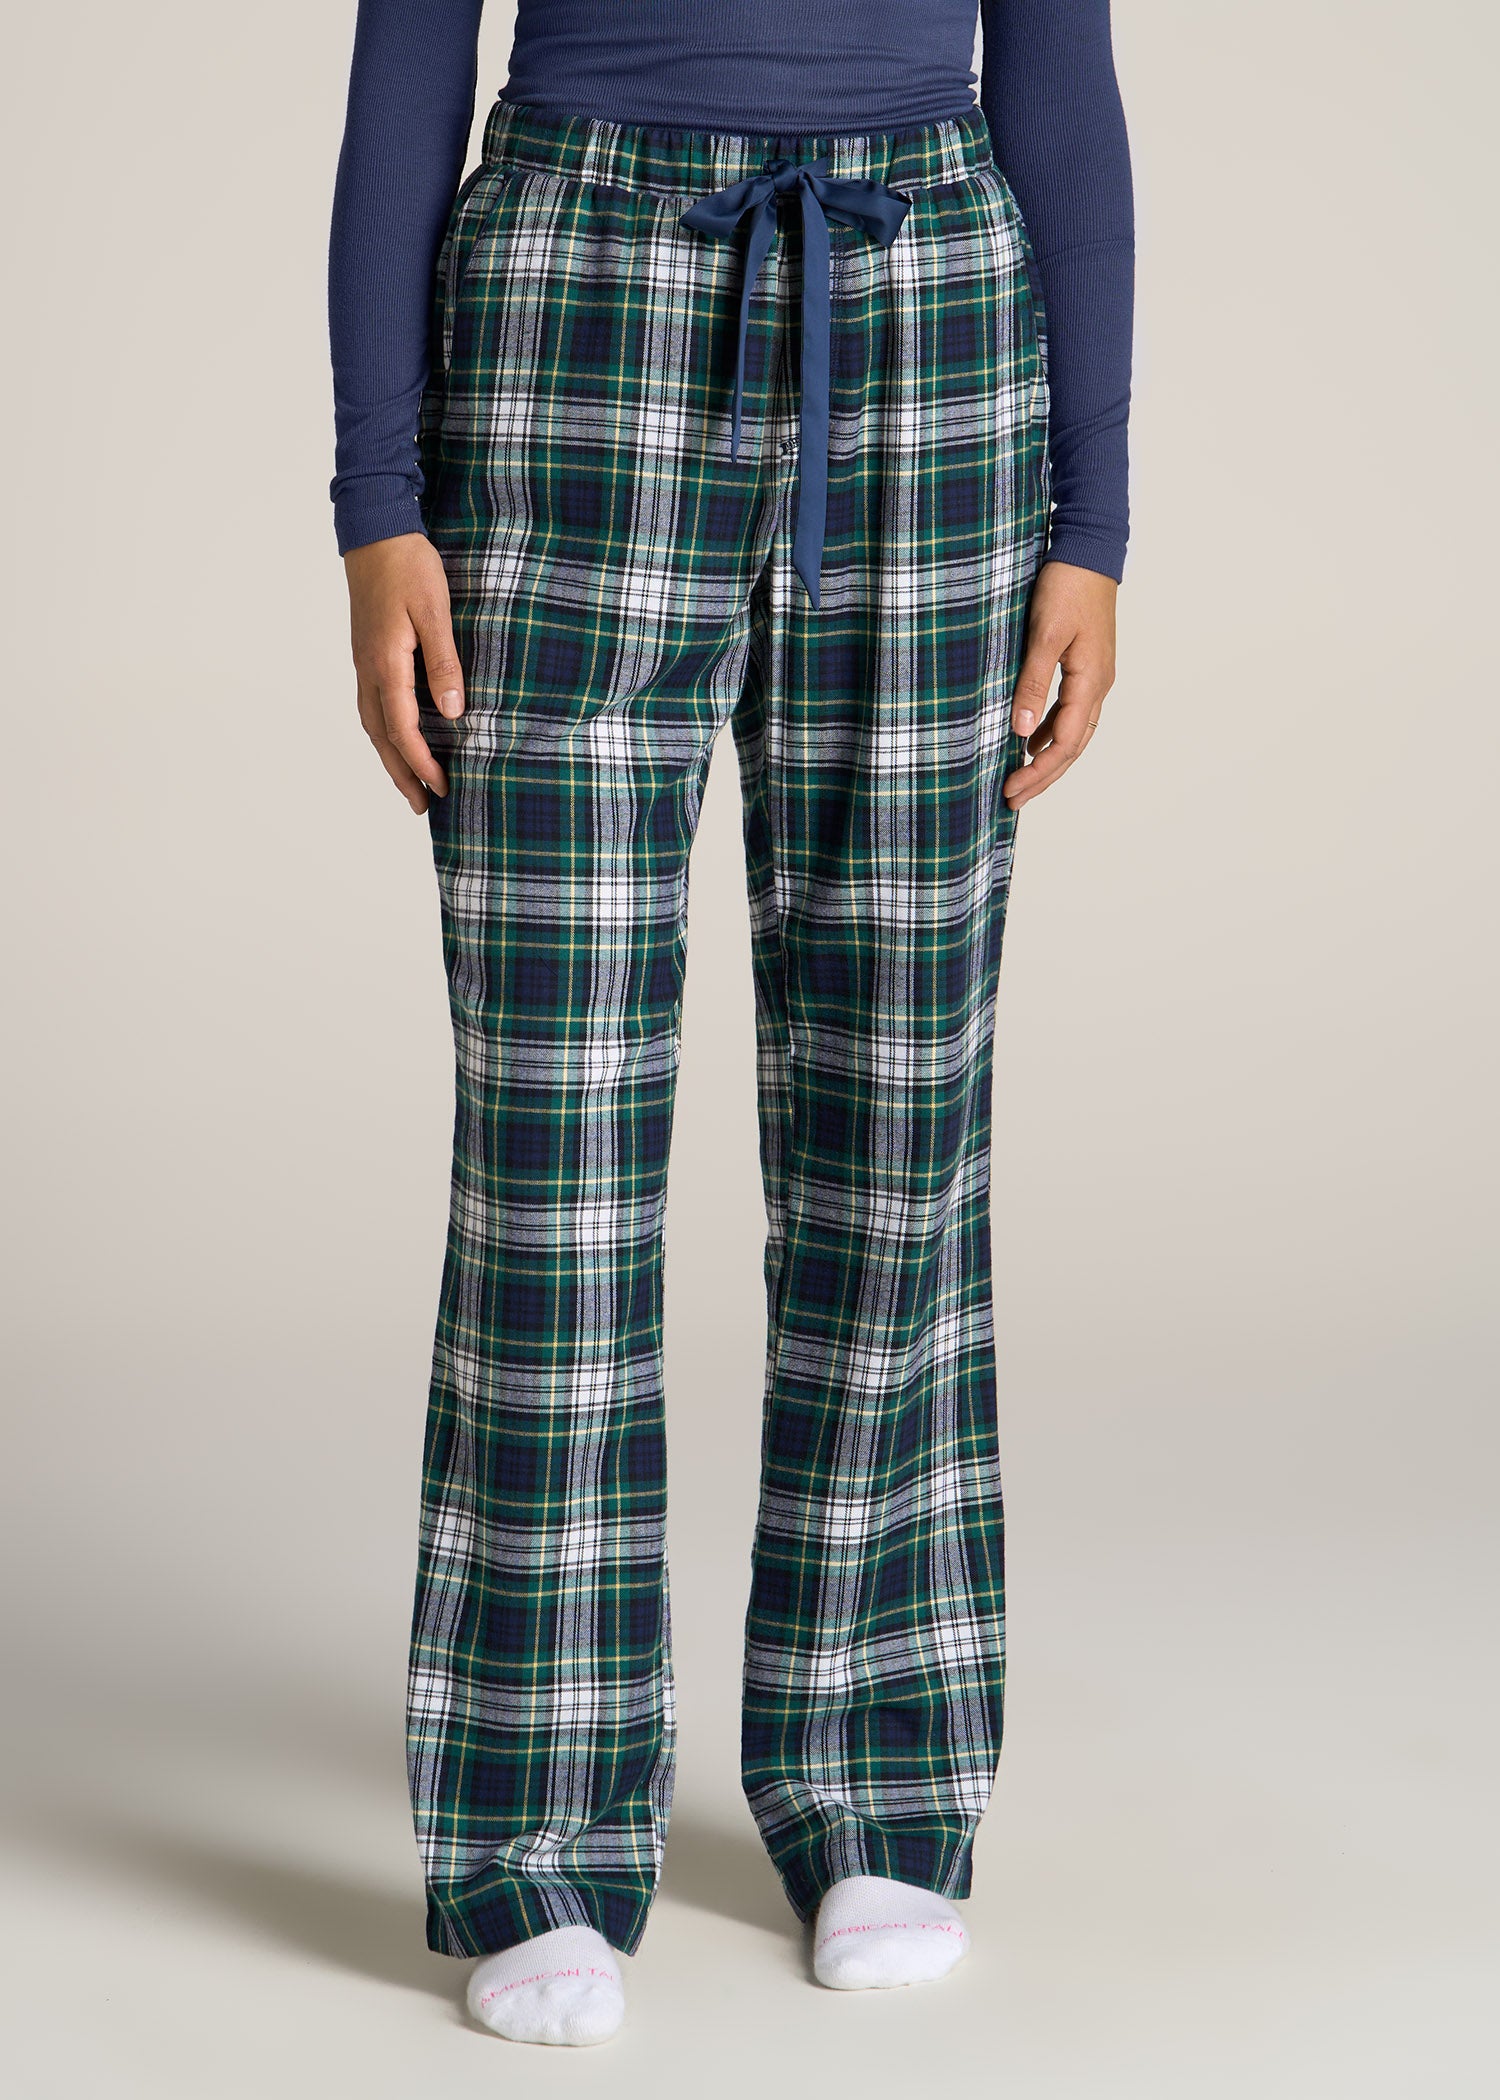 Women's Cotton Flannel Plaid Pajama Jogger Pants